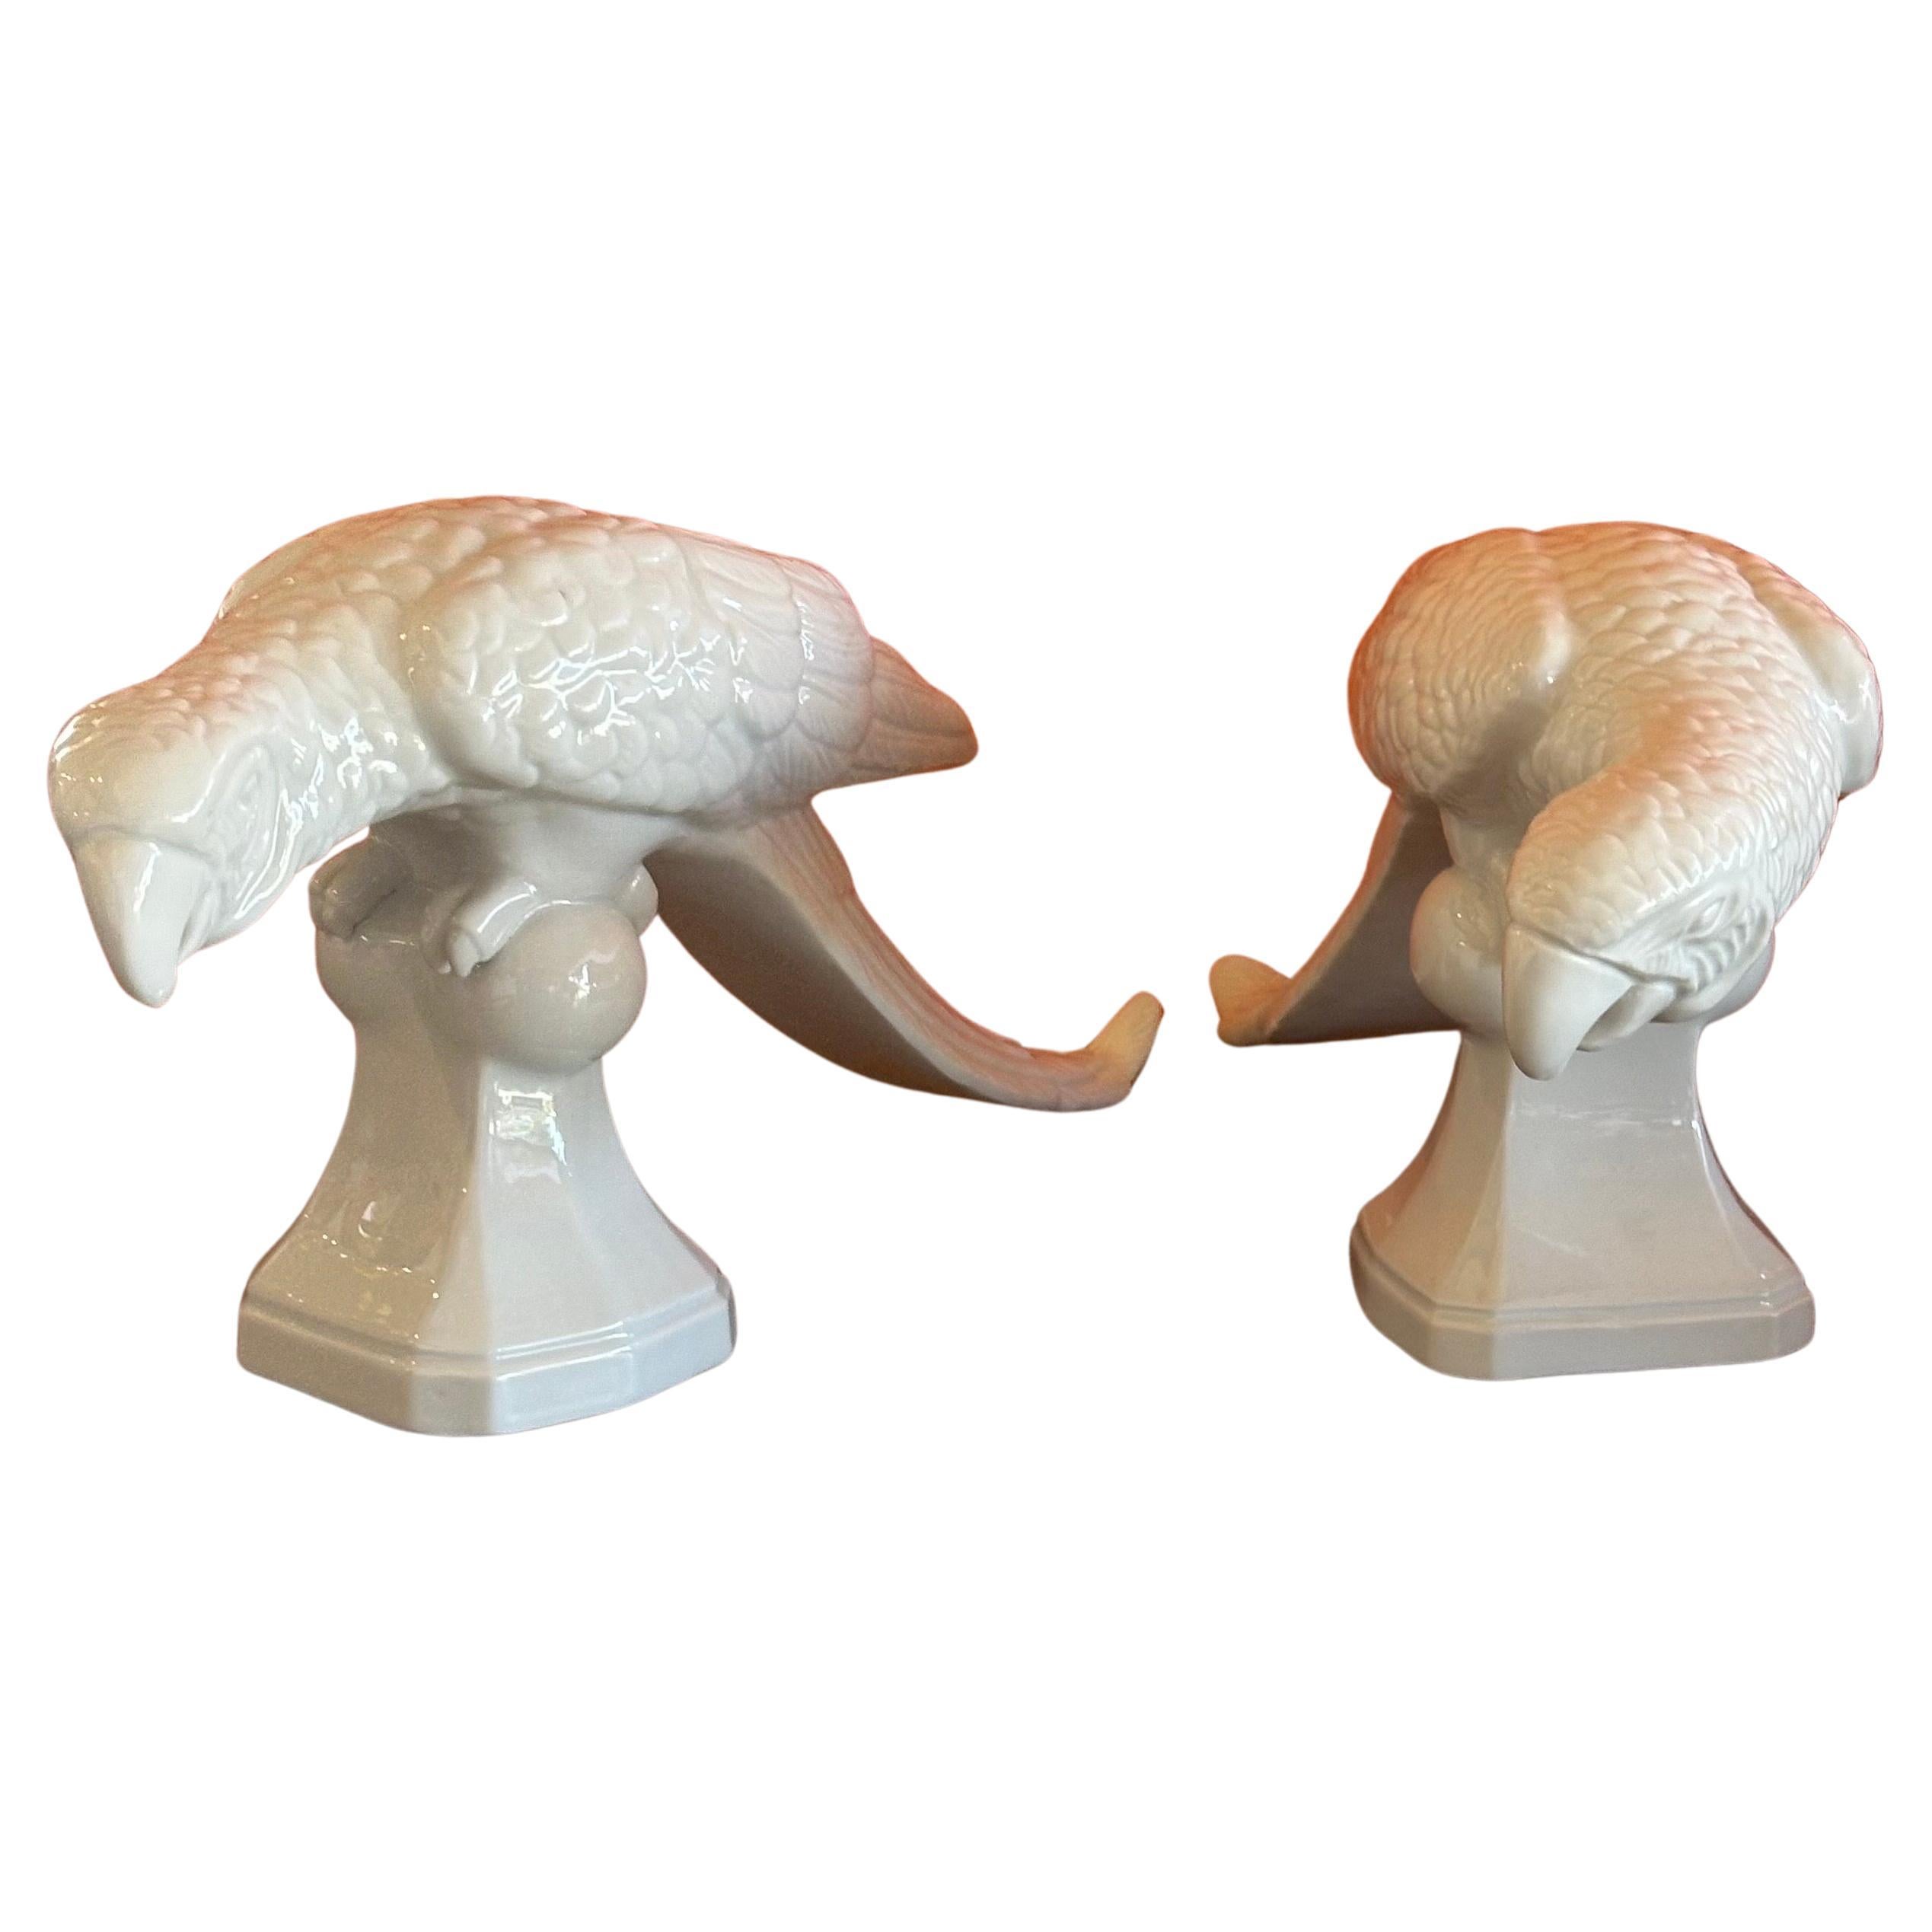 Klassische Papageien-Skulpturen aus weißem Porzellan / chine de blanc von Fitz & Floyd, ca. 1970er Jahre.  Das Paar ist in sehr gutem Vintage-Zustand ohne Chips, Risse oder Sprünge; jeder Papagei misst ungefähr 4,5 